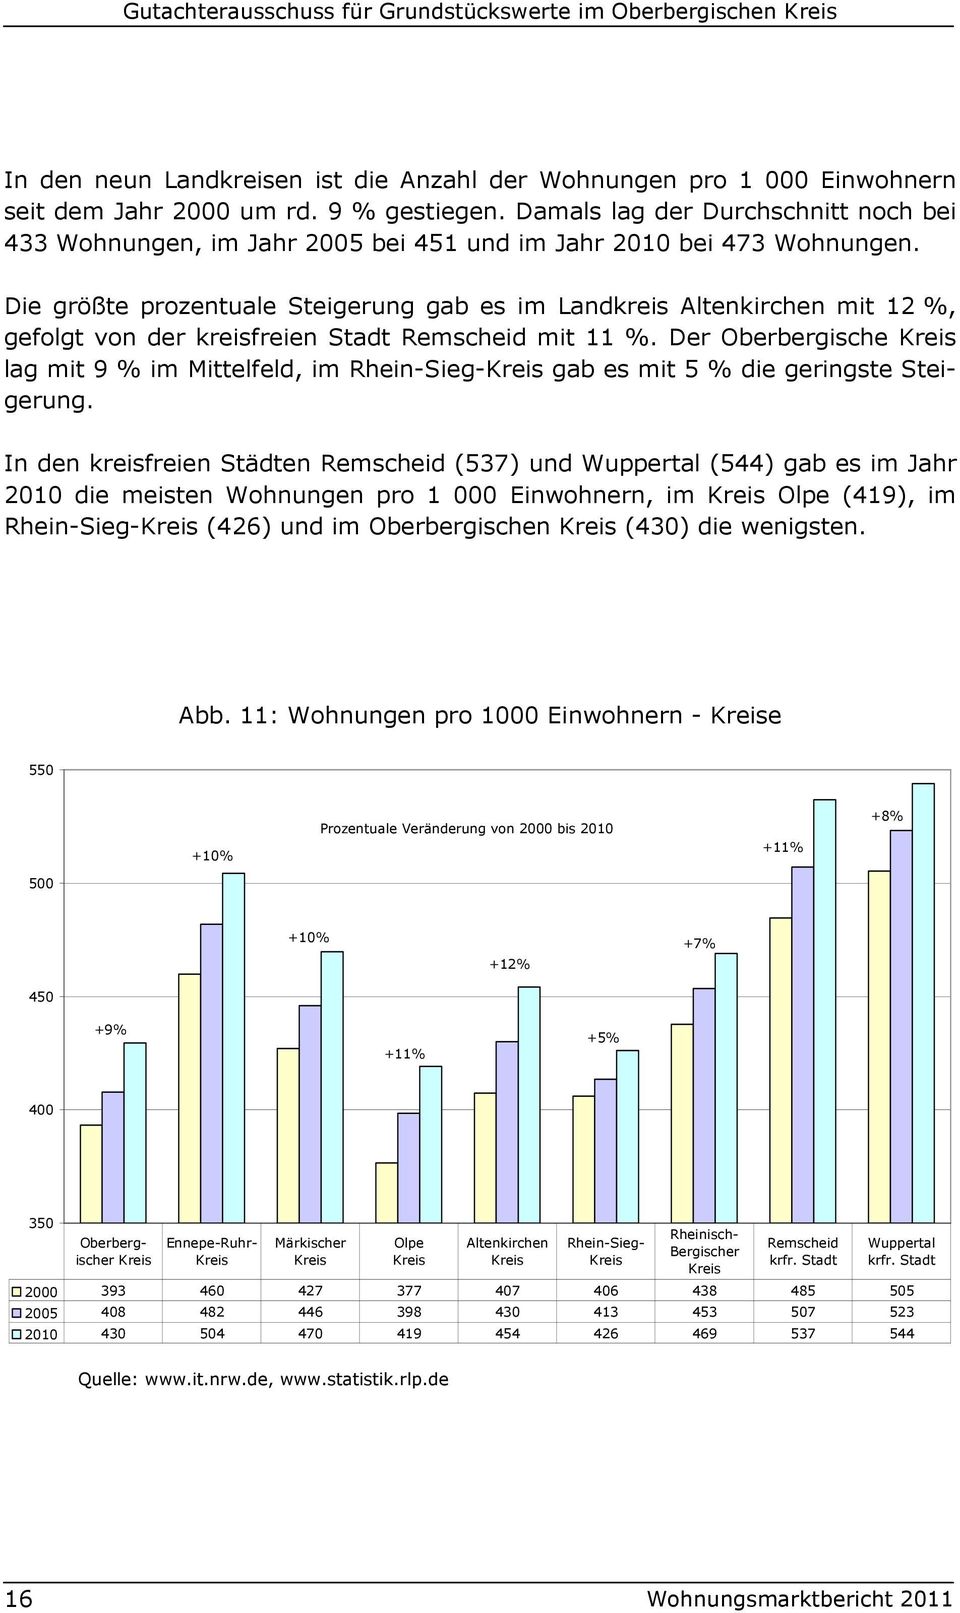 In den kreisfreien Städten Remscheid (537) und Wuppertal (544) gab es im Jahr 2010 die meisten Wohnungen pro 1 000 Einwohnern, im Olpe (419), im Rhein-Sieg- (426) und im Oberbergischen (430) die